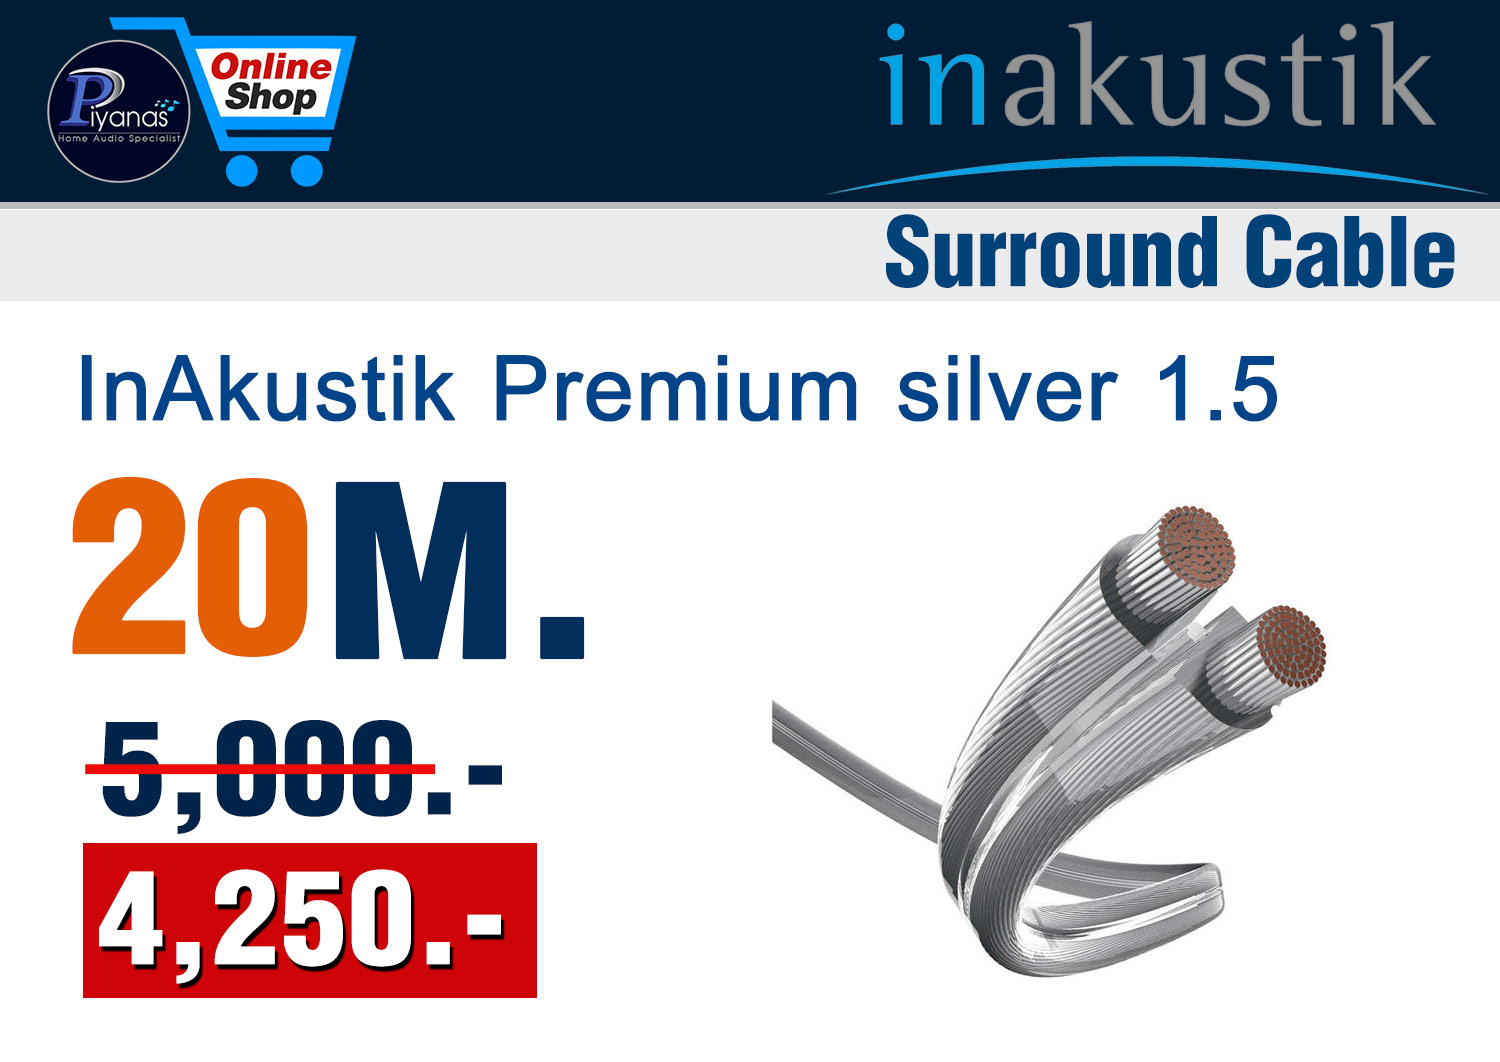 Monitor Premium silver 1.5 (20M.)